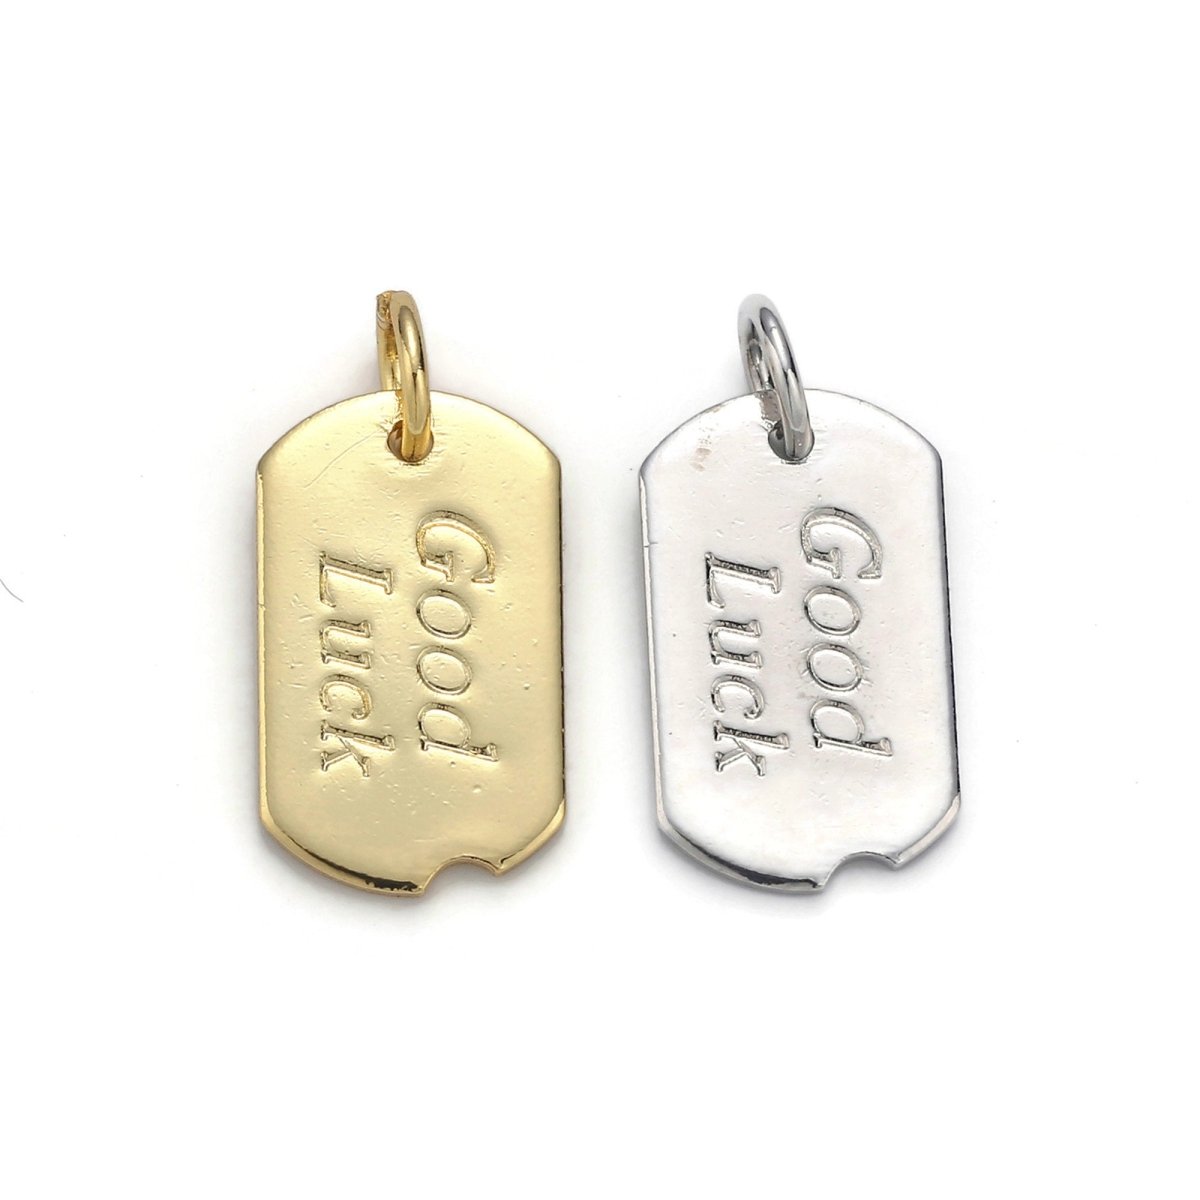 24k Gold Filled Good Luck Charm, Bar Plate Good Luck Pendant Charm, Gold Filled Charm, Gold / Silver Color Option D-045 - DLUXCA